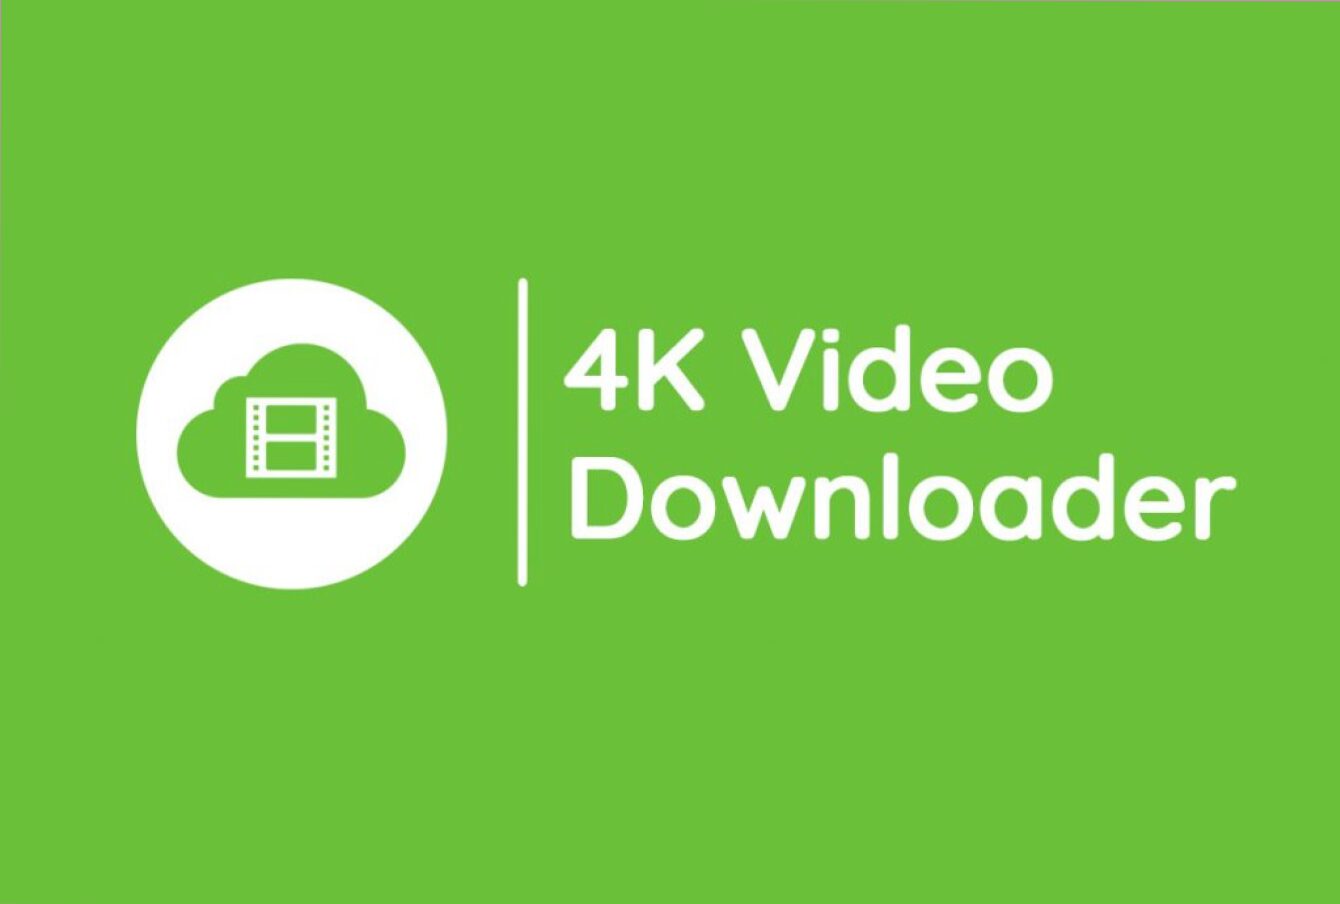 Alt text: "Image of 4K Video Downloader logo with '4K Video Downloader Plus Crack' text overlay."